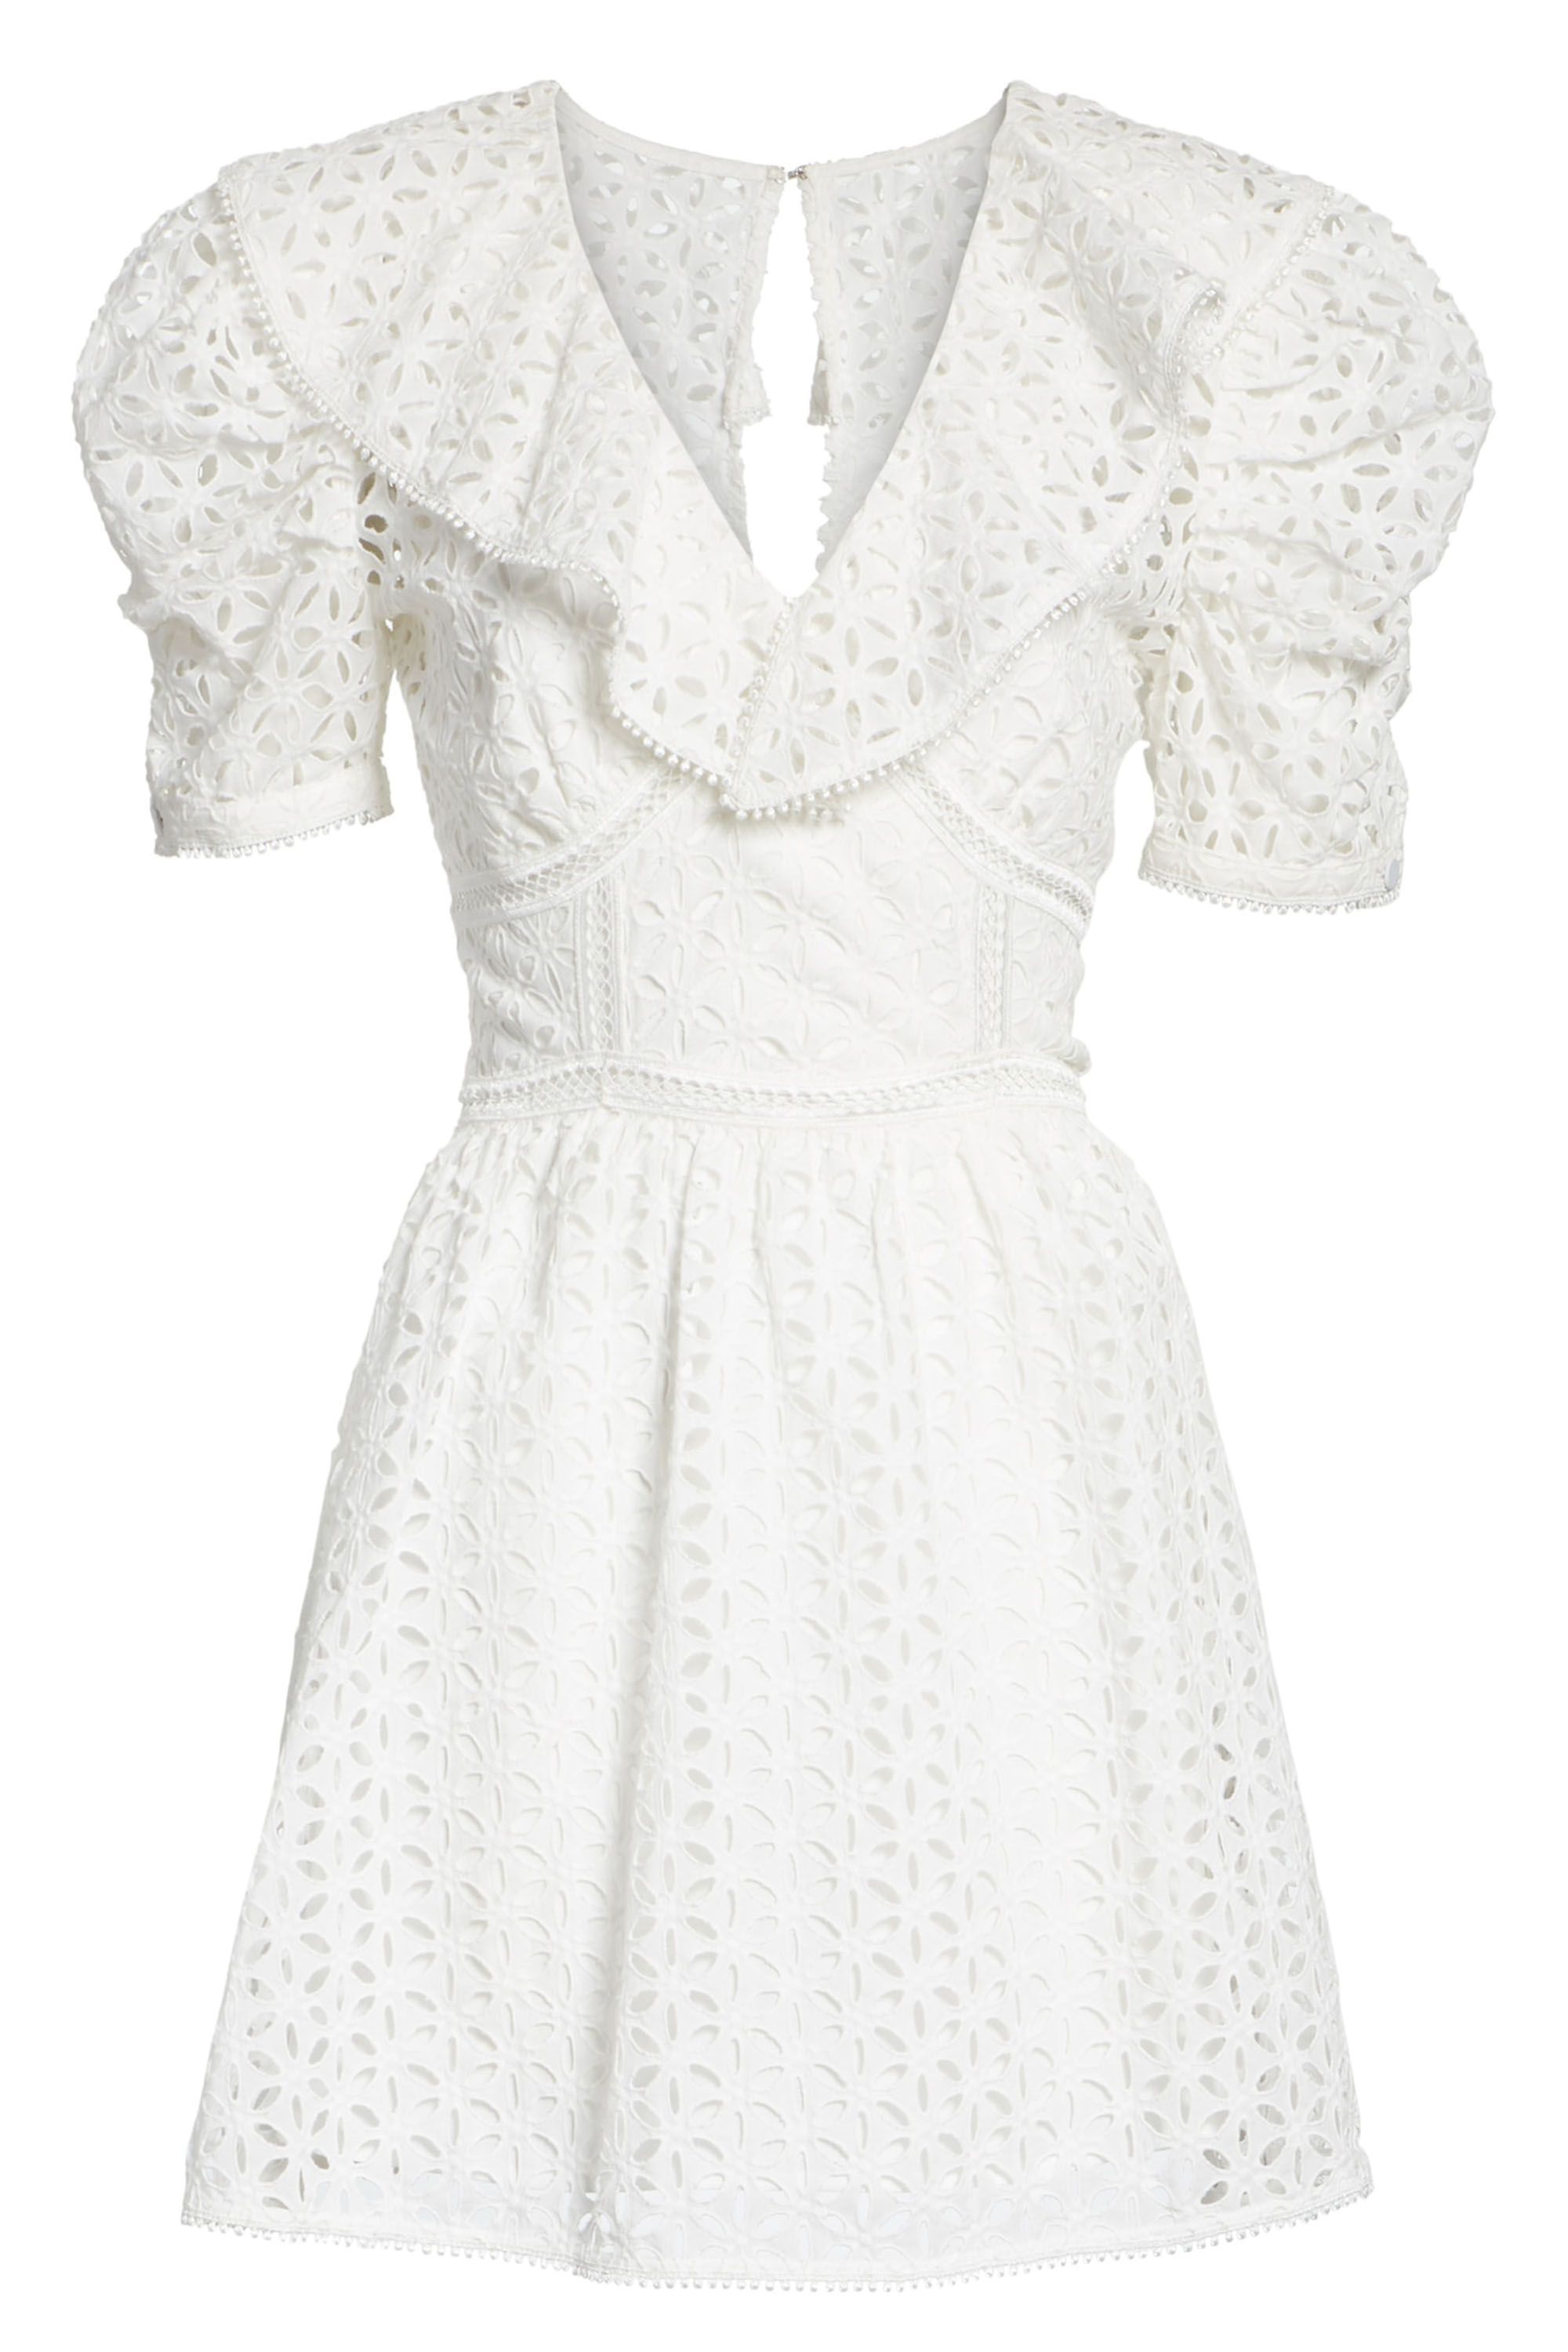 flirty white summer dresses